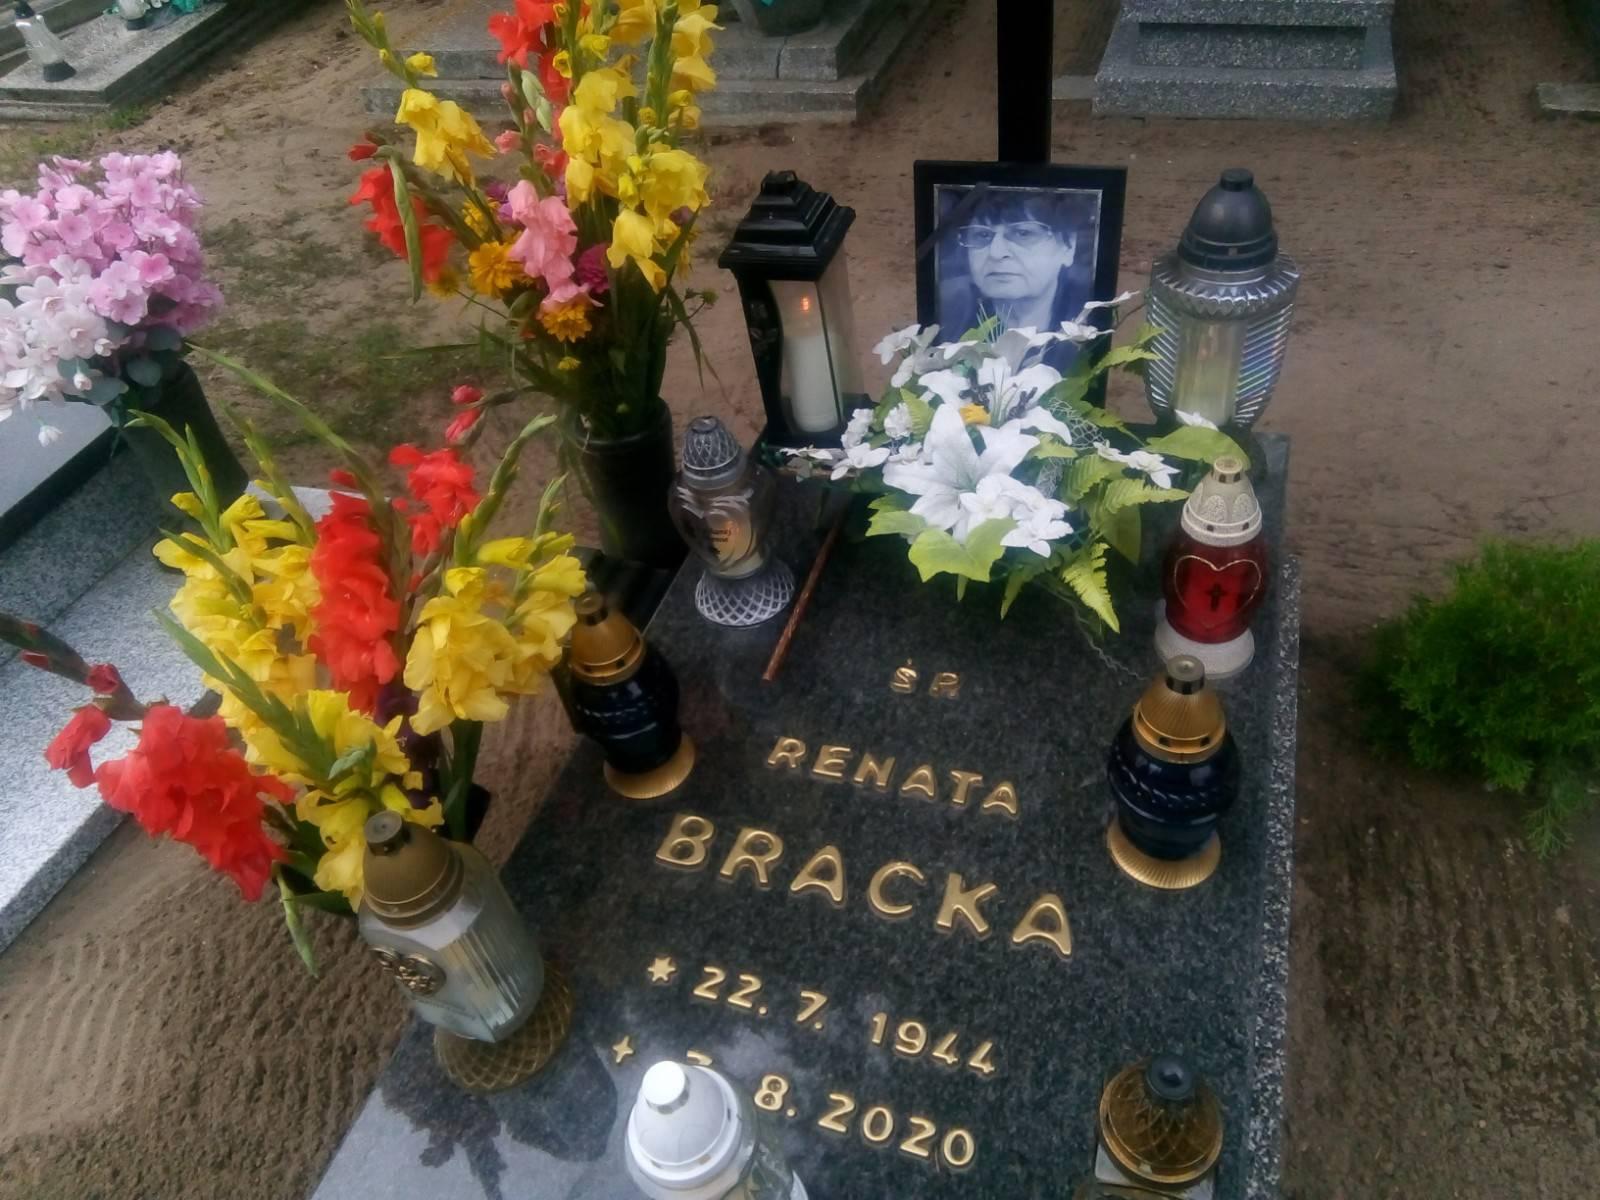 Dziś 7 sierpnia 2021 r. o godz. 8, 16 minęła 1 rocznica śmierci mojej ukochanej Mamy ś.p. Renaty Bracka, która zmarła w więcborskim szpitalu i spoczywa na cmentarzu komunalnym w Więcborku, gdzie obecnie się znajduję – syn Tomasz Roman Bracka 